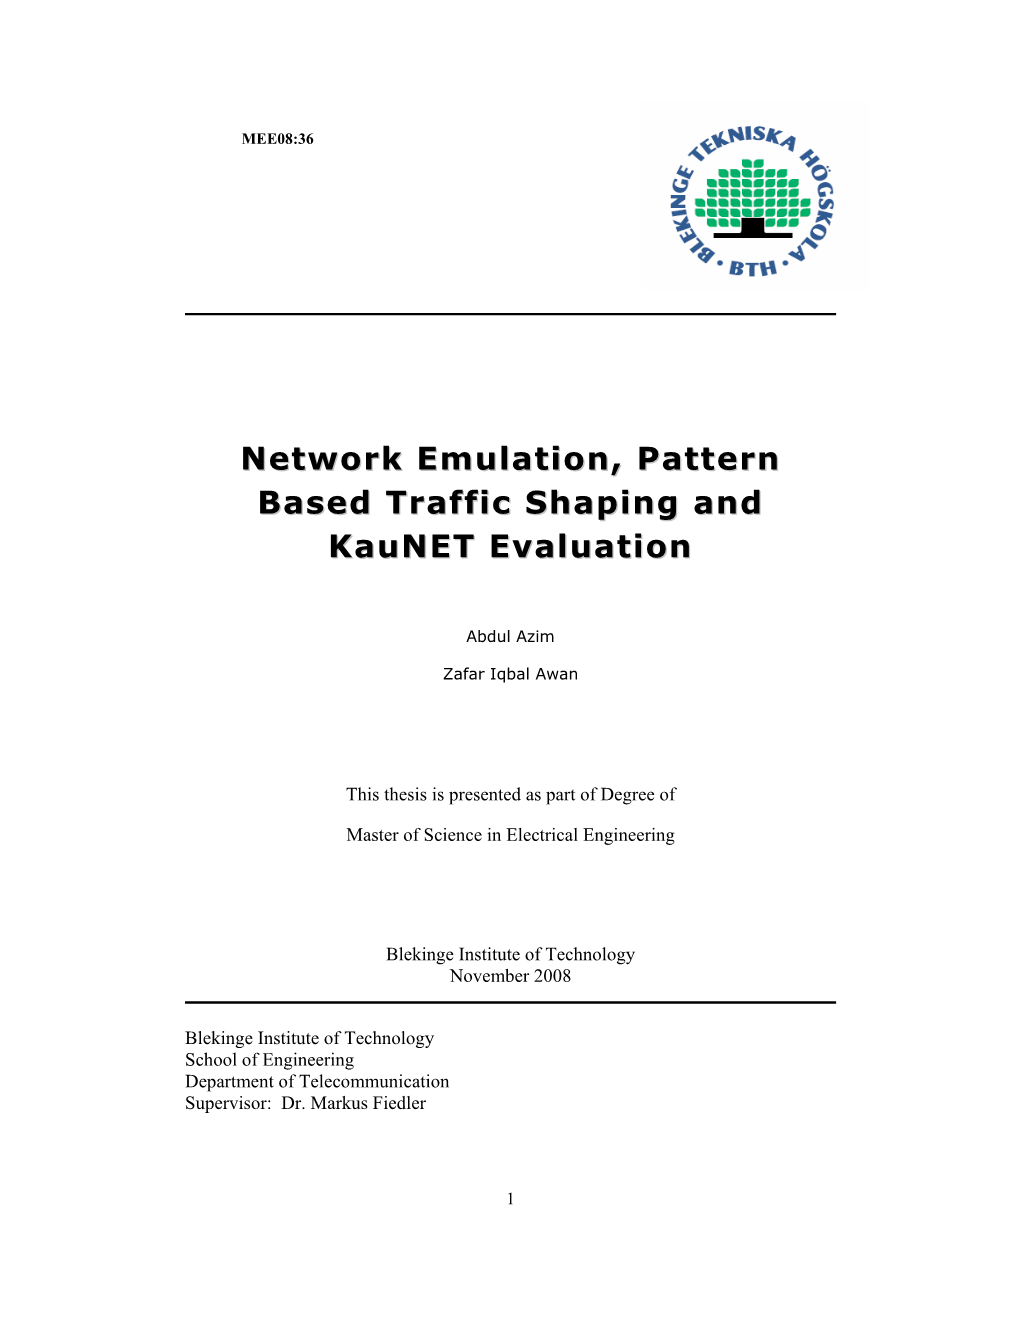 Network Emulation, Pattern Based Traffic Shaping and Kaunet Evaluation